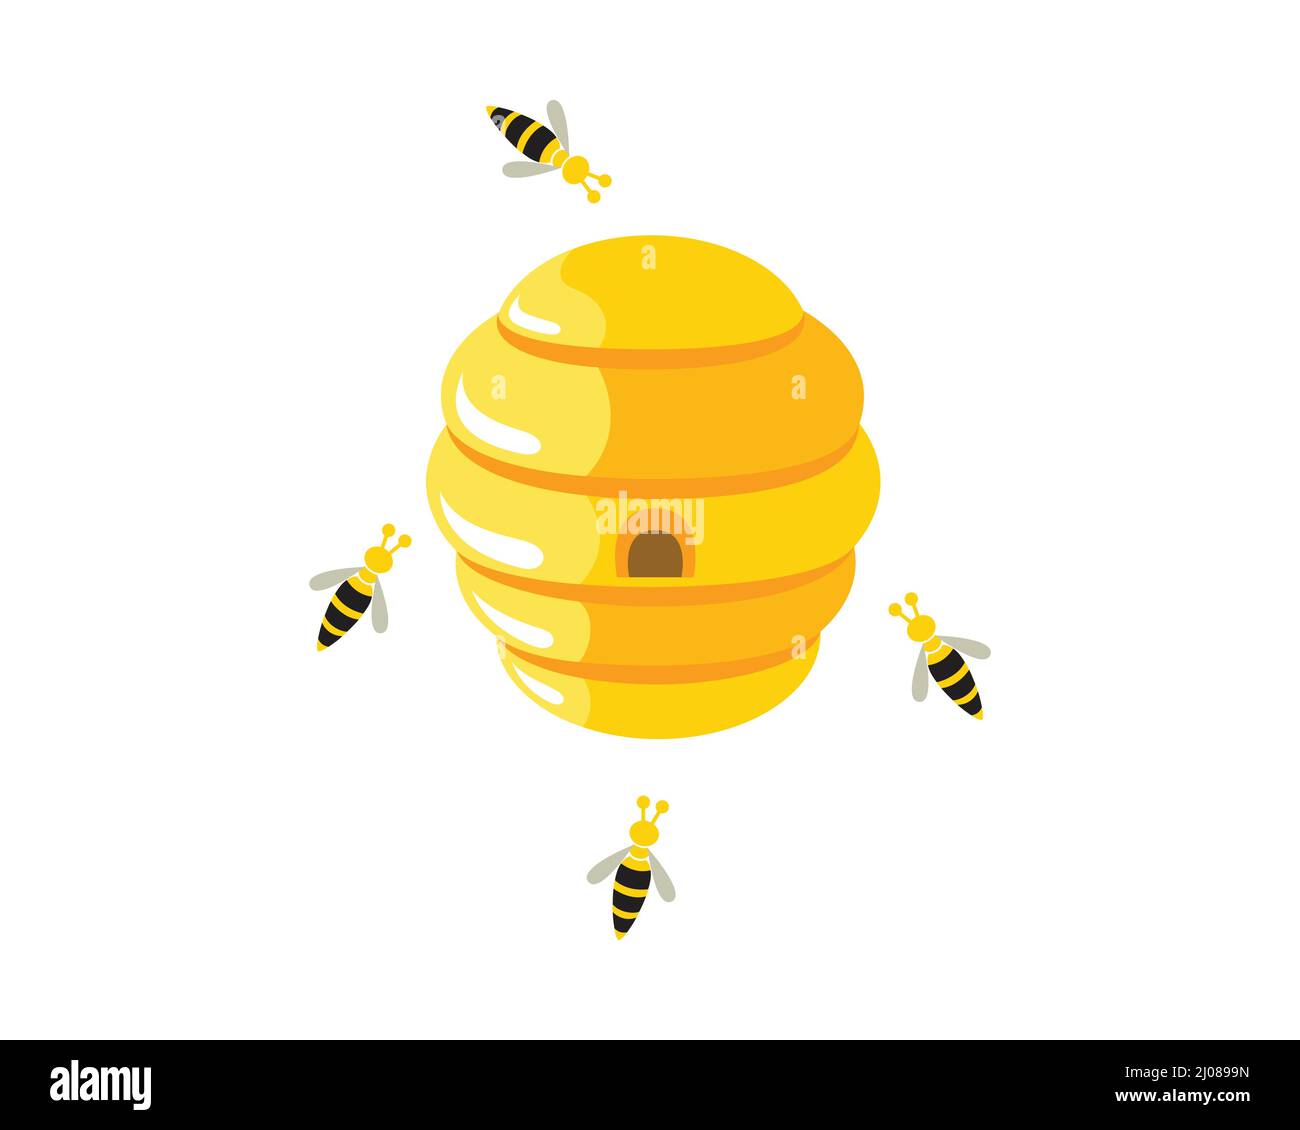 Bienenstock mit fliegenden Bienen rund Illustration Stock Vektor